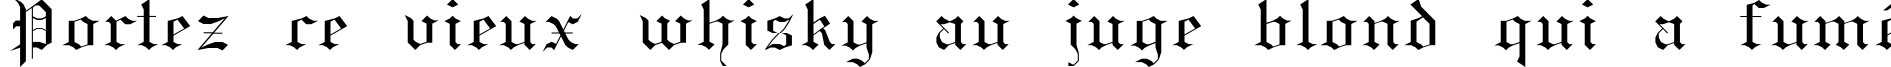 Пример написания шрифтом GothicE текста на французском